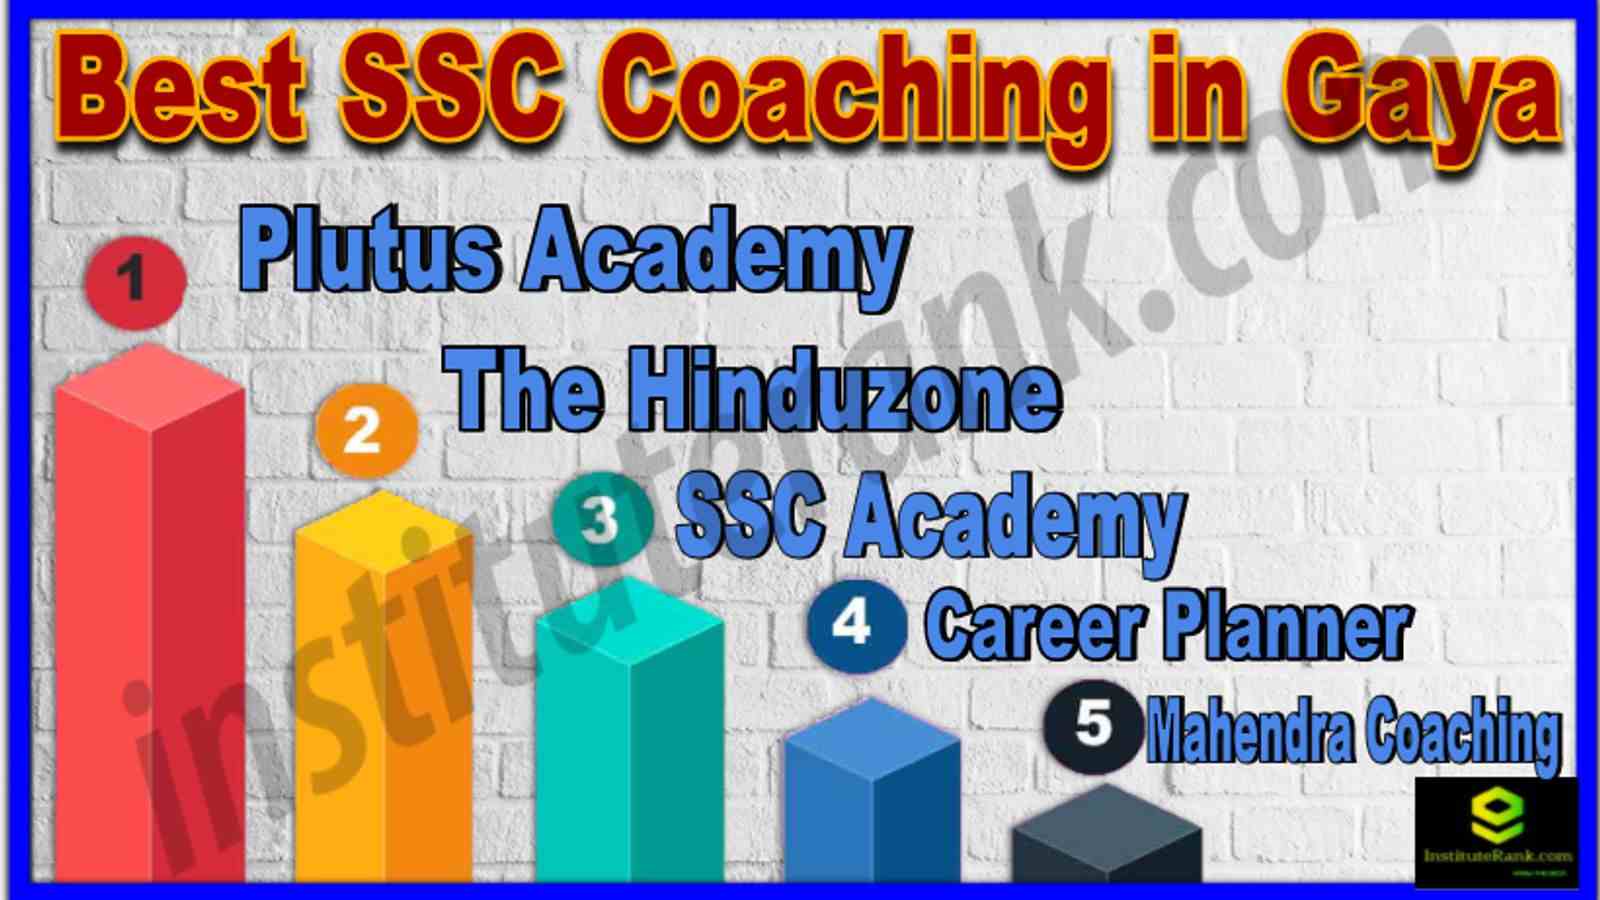 Best SSC Coaching in Gaya